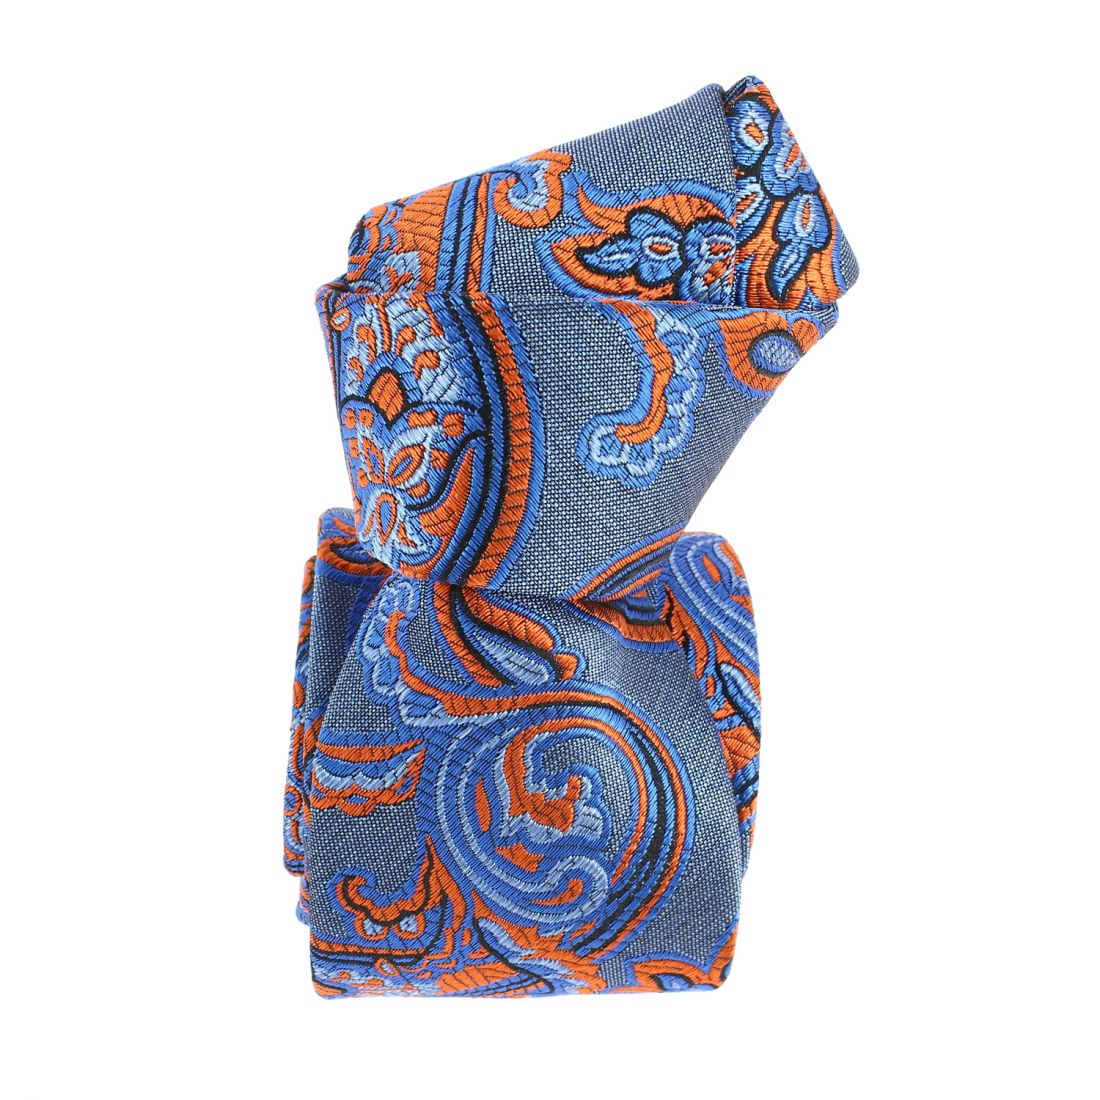 Cravate étoile, Versailles Bleu et orange, Boivin atelier Parisien BOIVIN